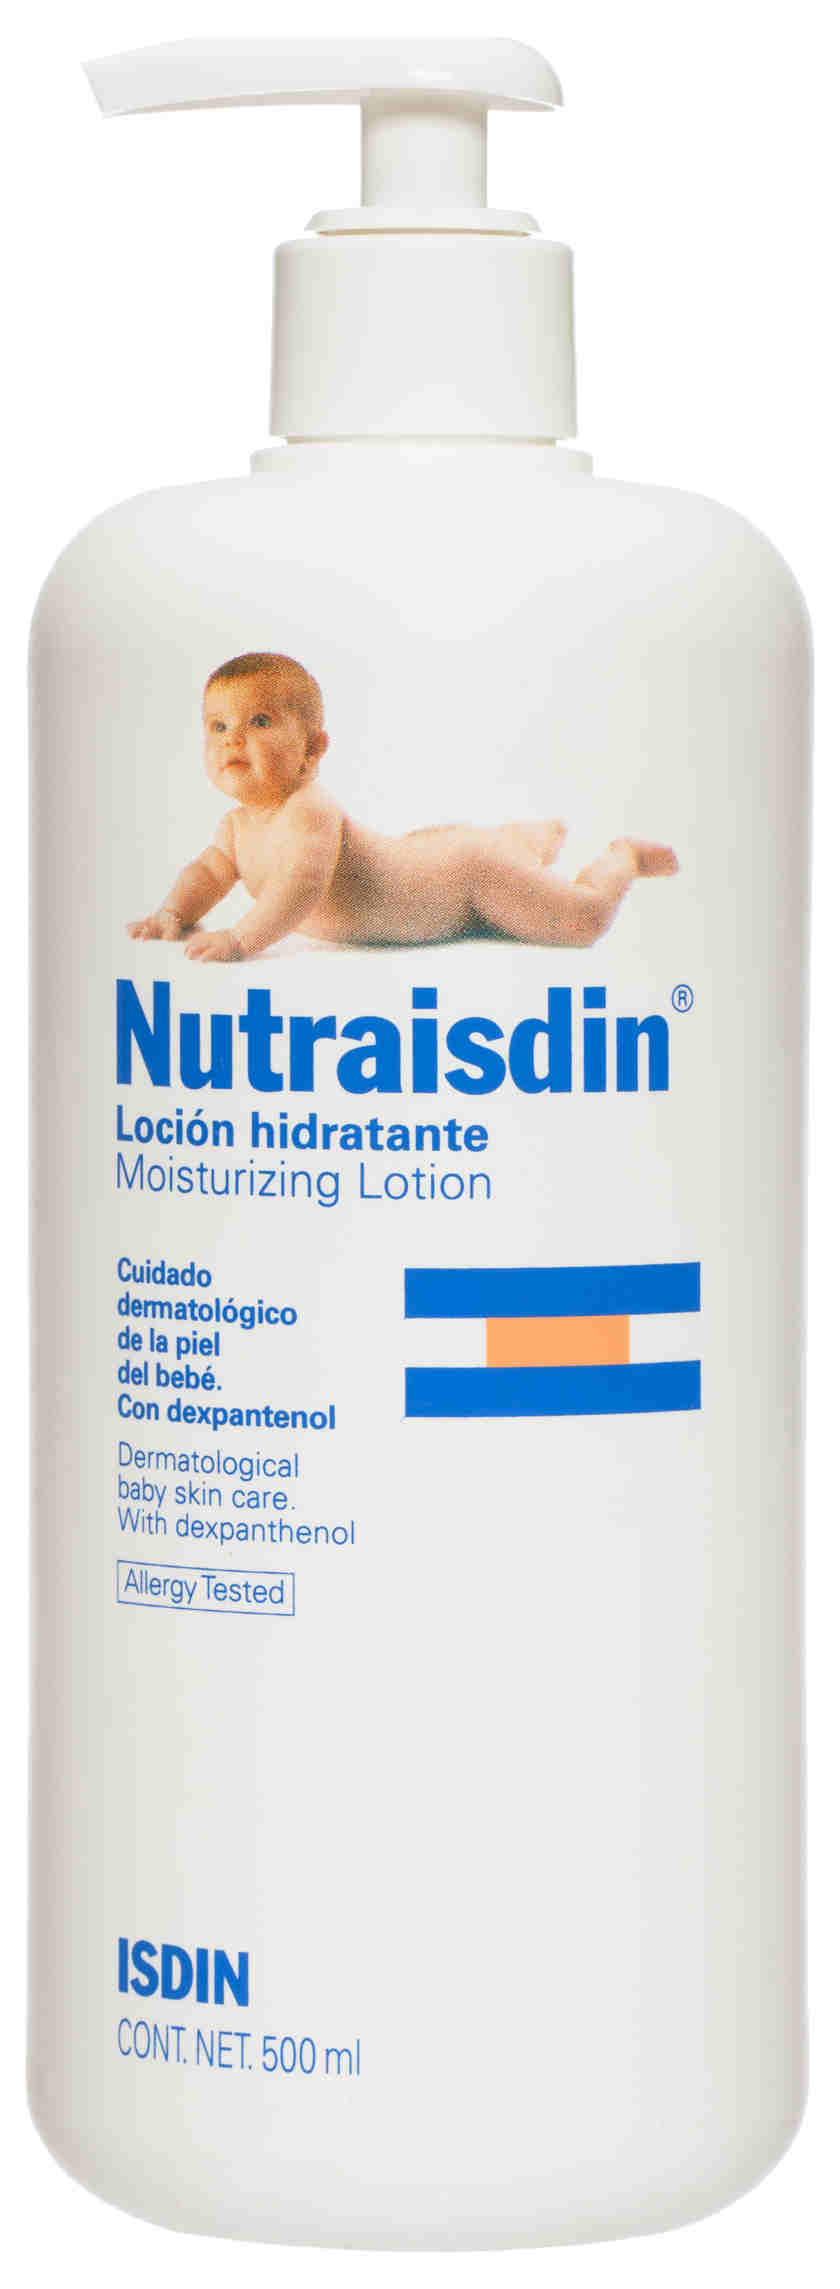 Foto Nutraisdin Loción Hidratante Infantil